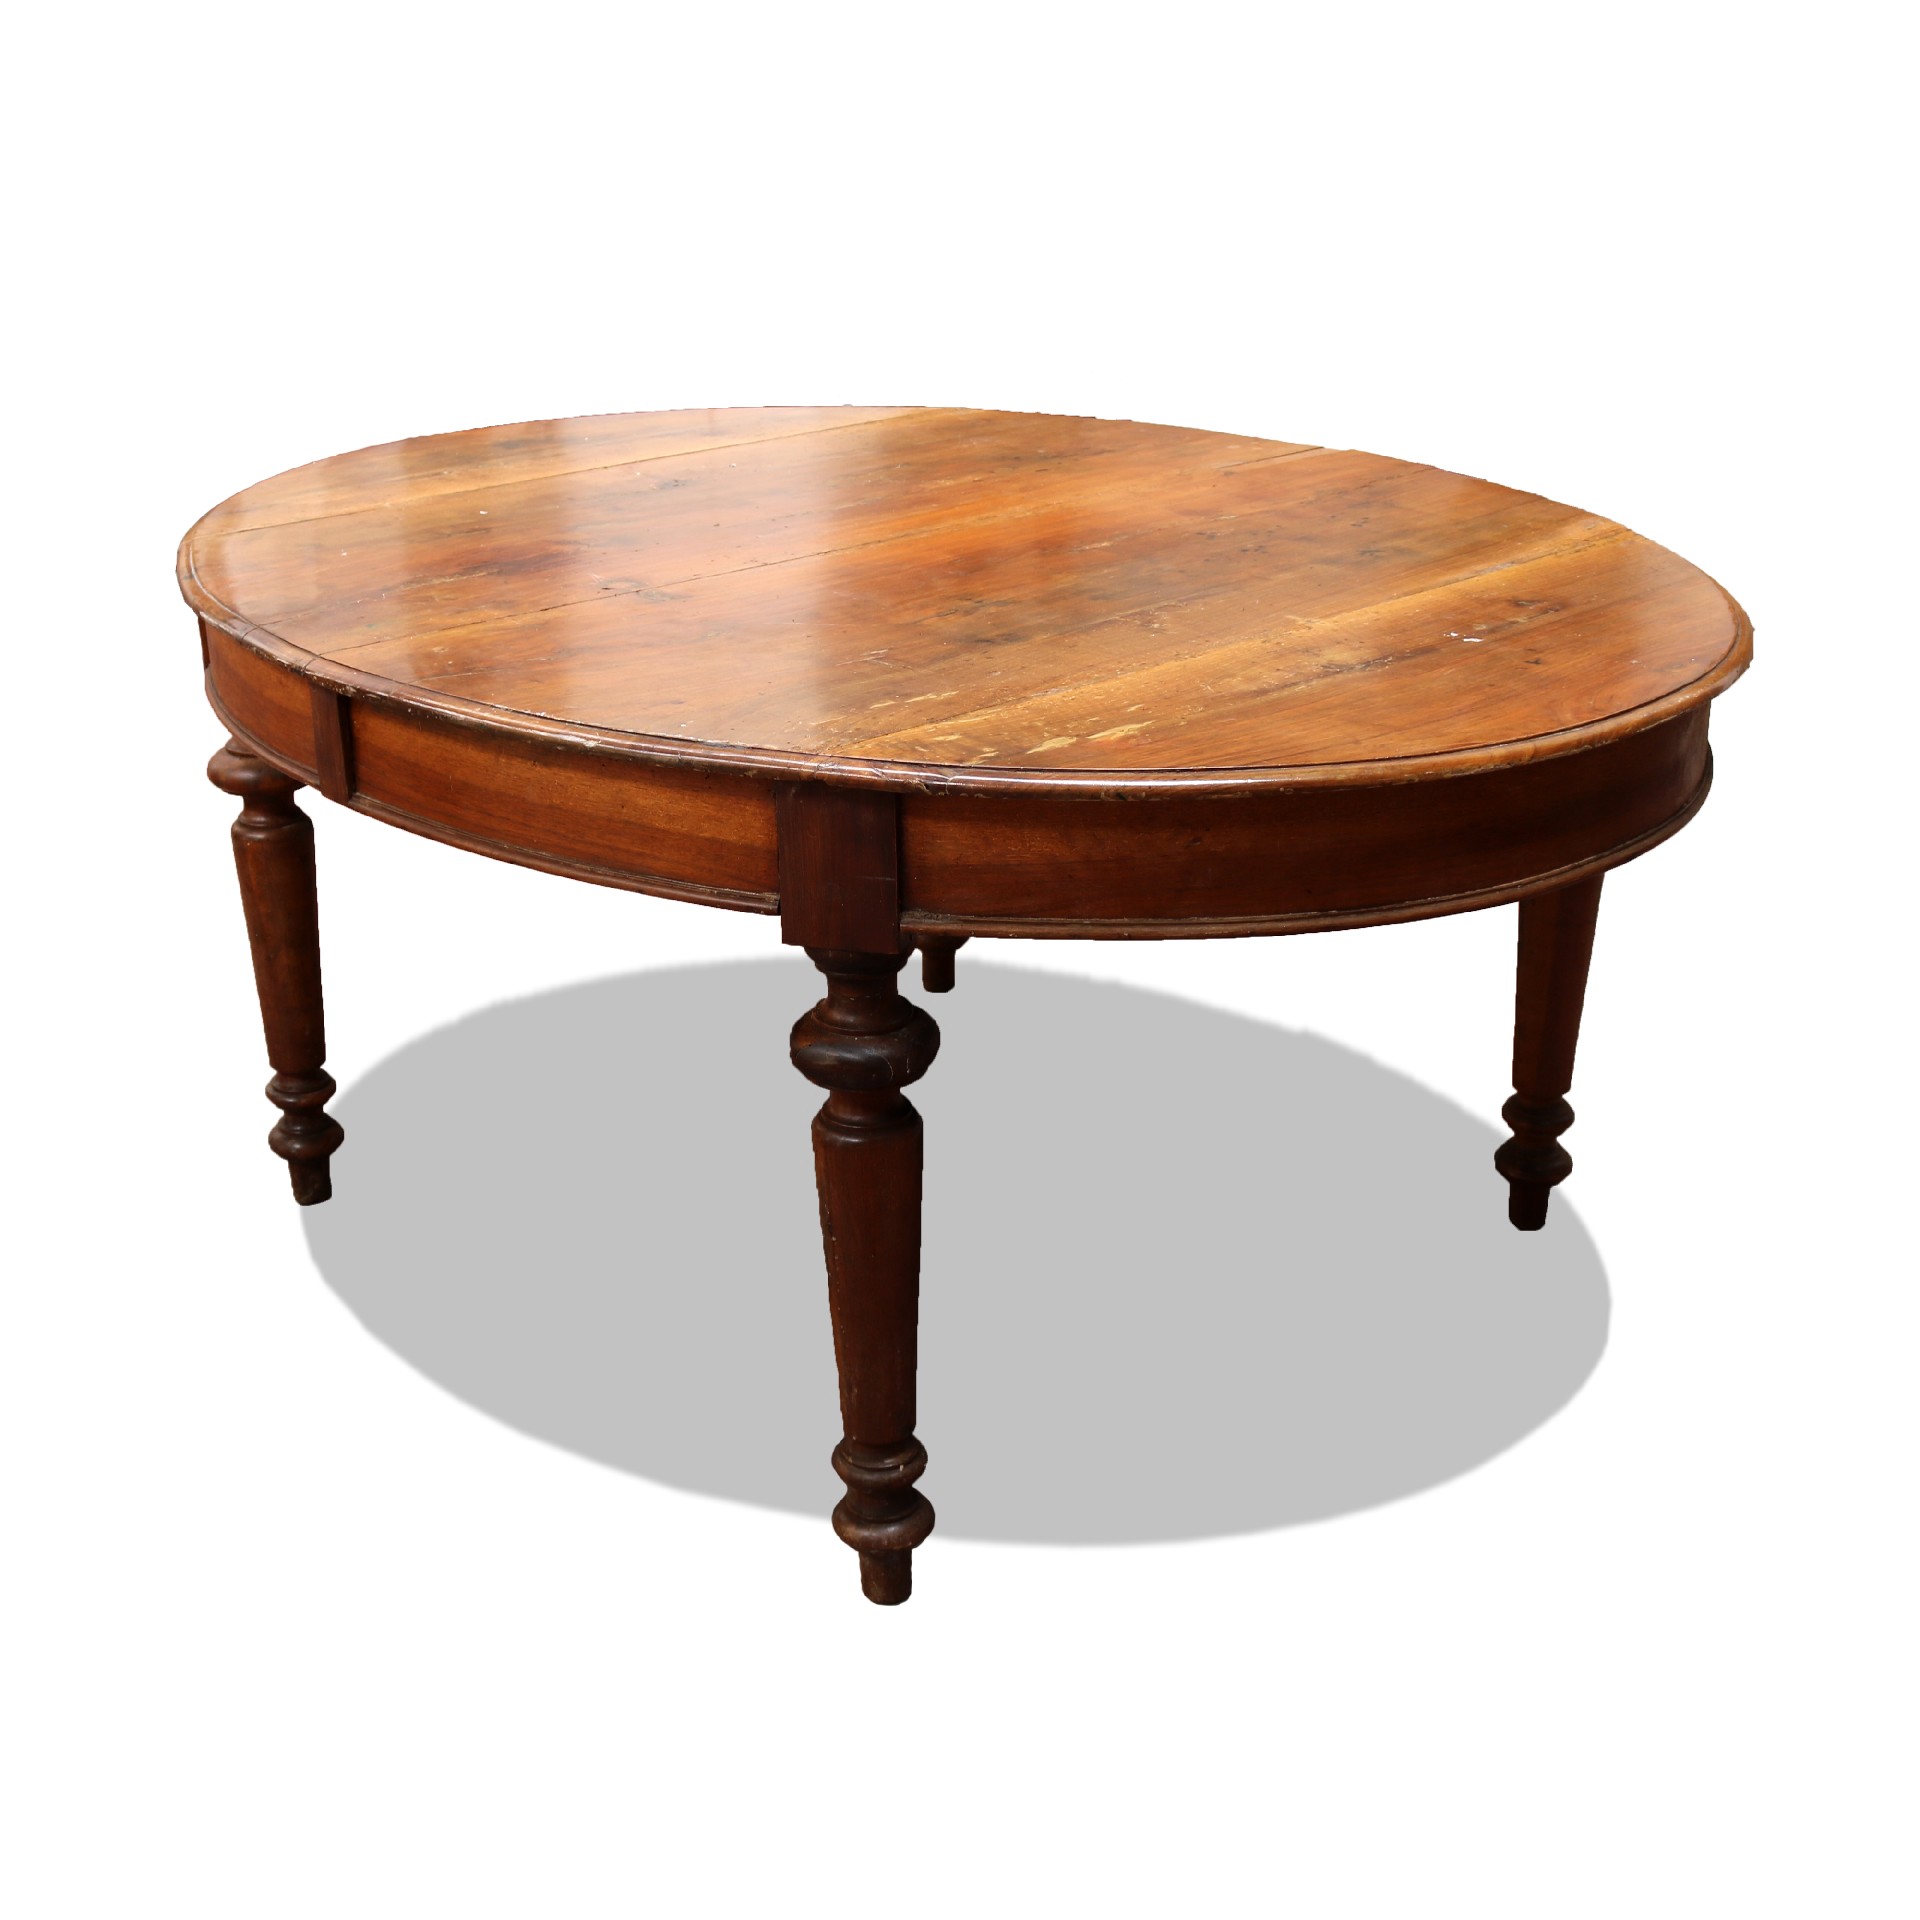 Antico tavolo in legno. - Tavoli Antichi - Mobili antichi - Prodotti - Antichità Fiorillo